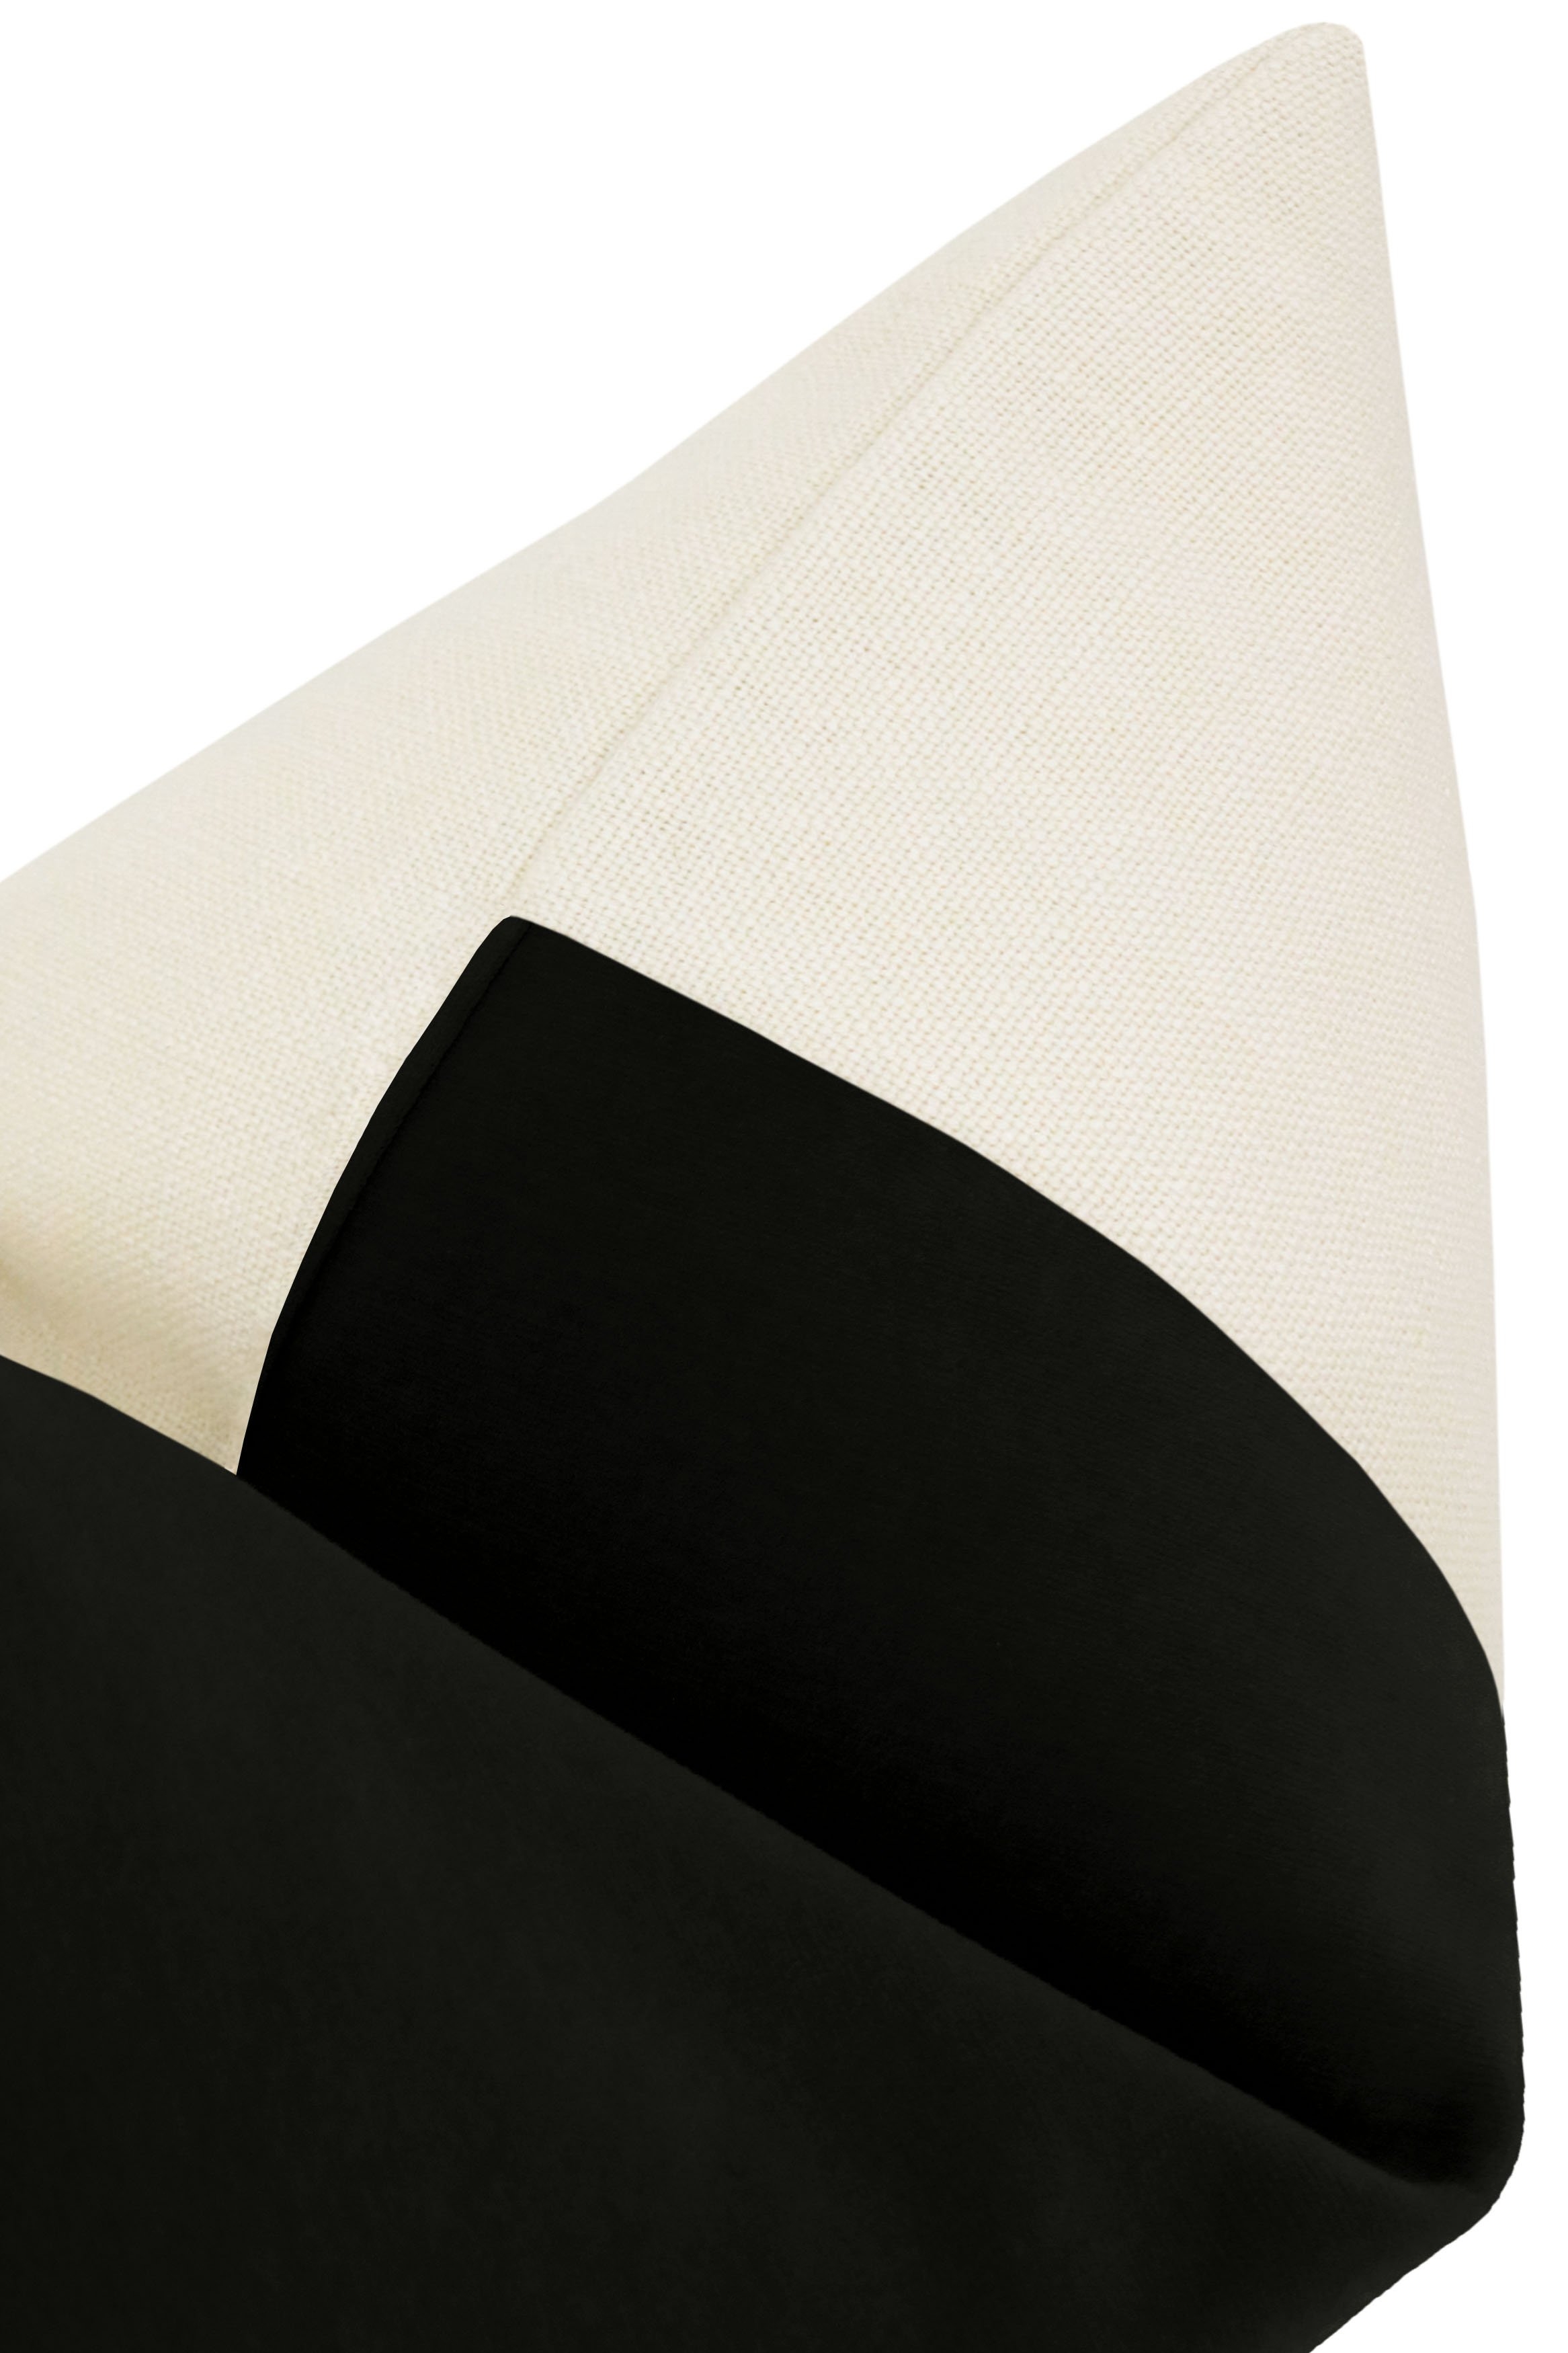 Studio Velvet Pillow Cover, Noir, 18" x 18" - Image 2